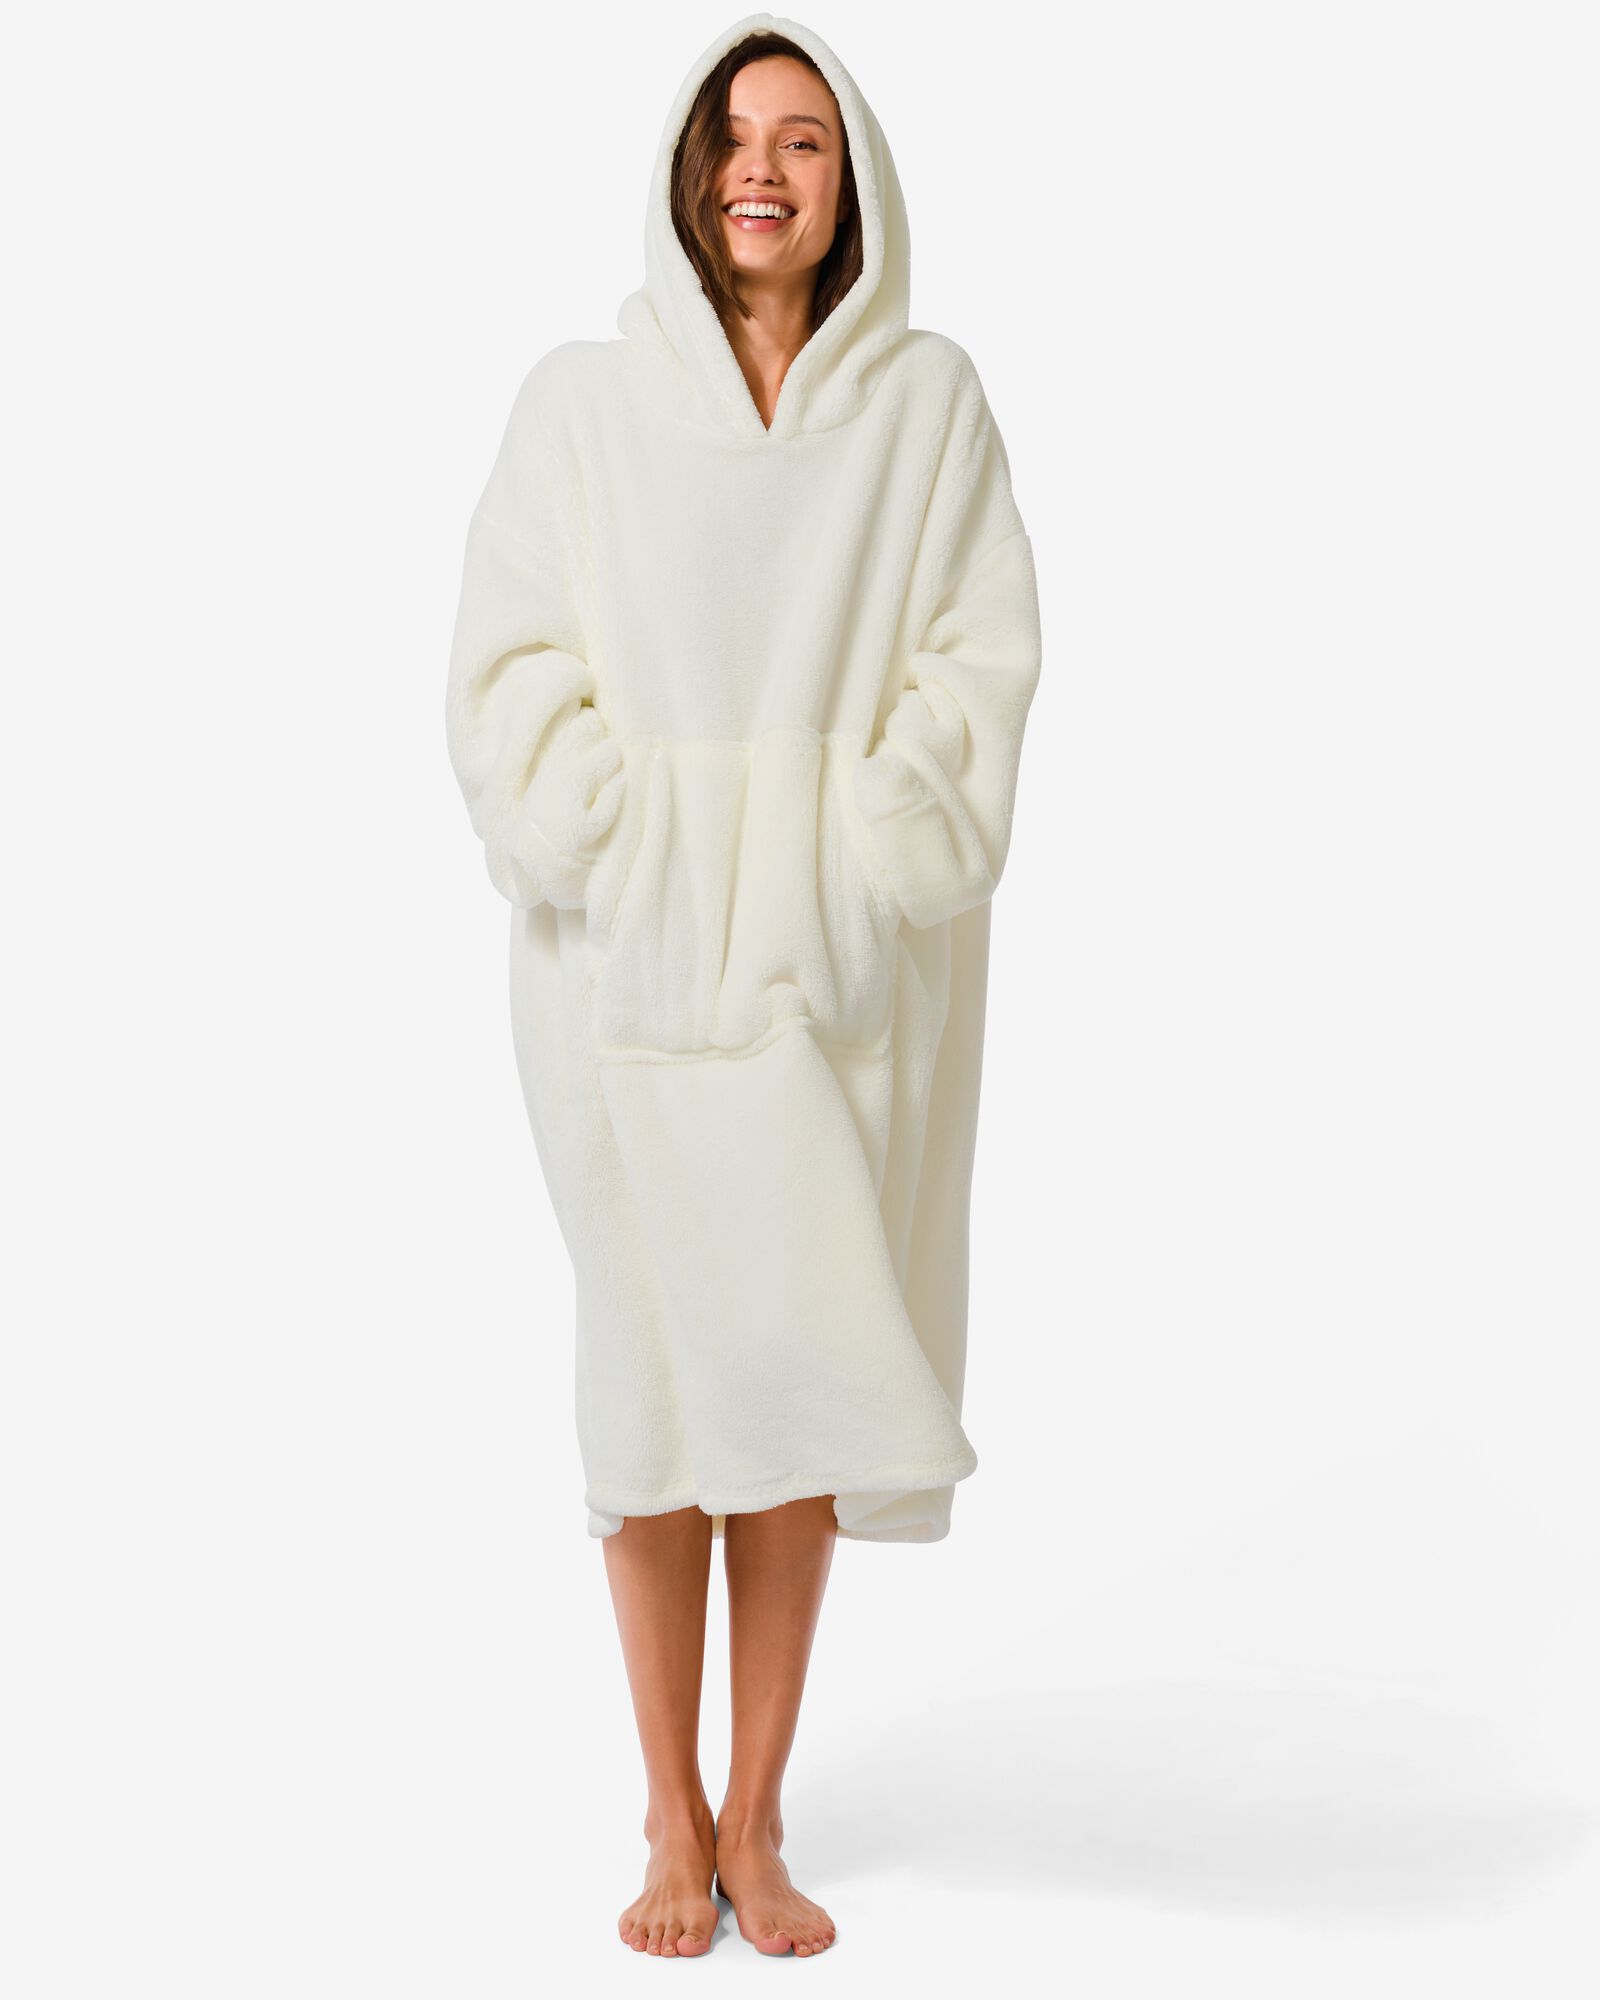 plaid à capuche et hoodie blanc taille unique - 61130262 - HEMA